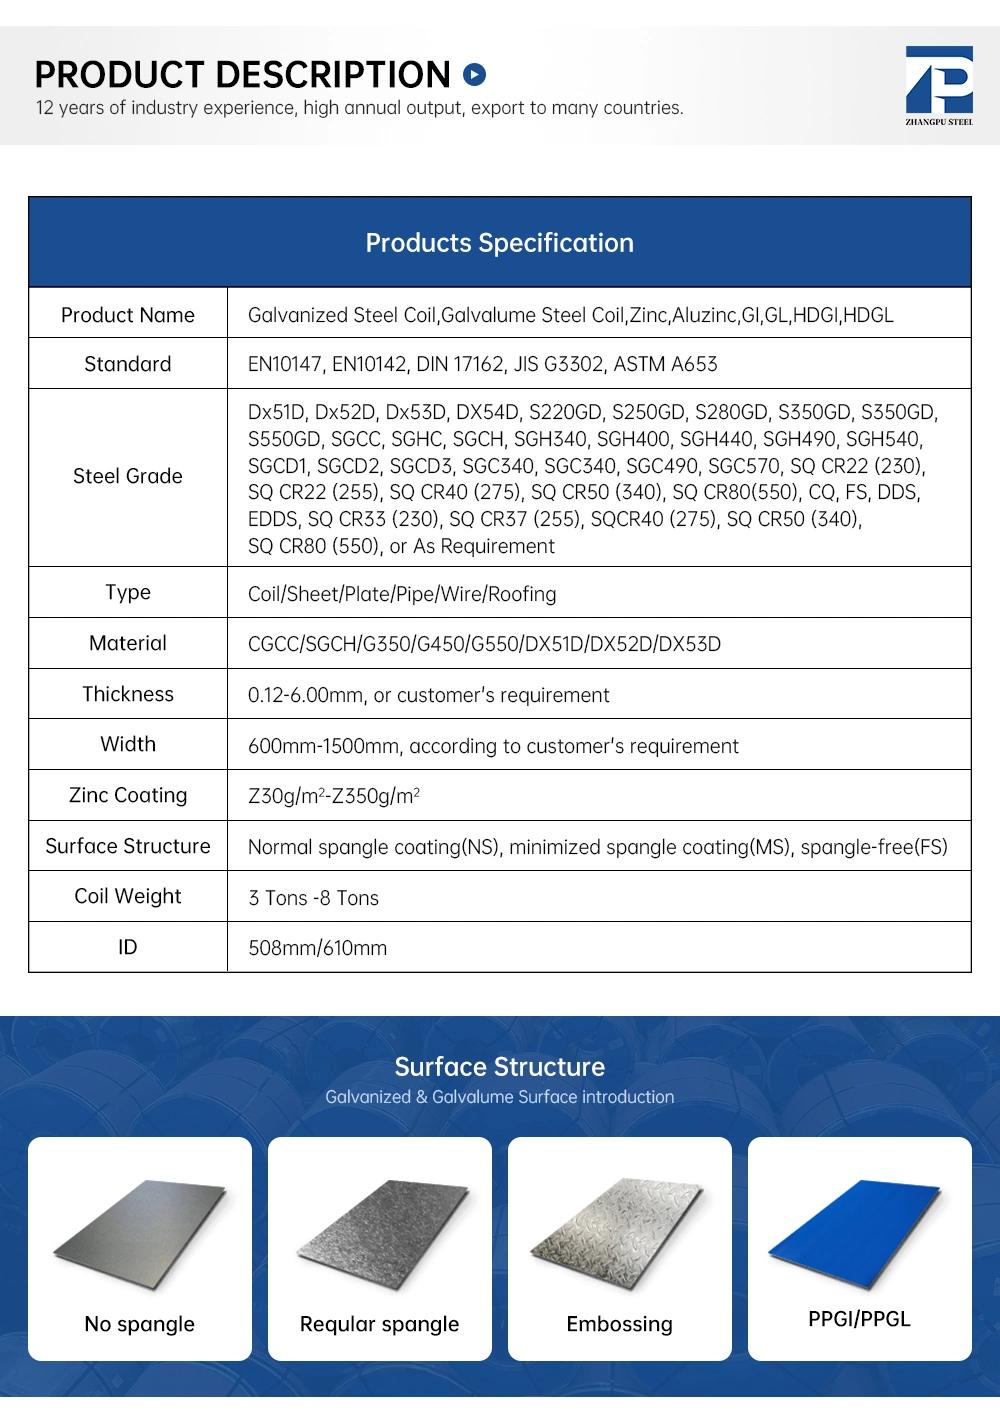 PPGI PPGL Prepainted Galvanized Steel Coil Manufacture Specification PPGI/PPGL Steel Coil